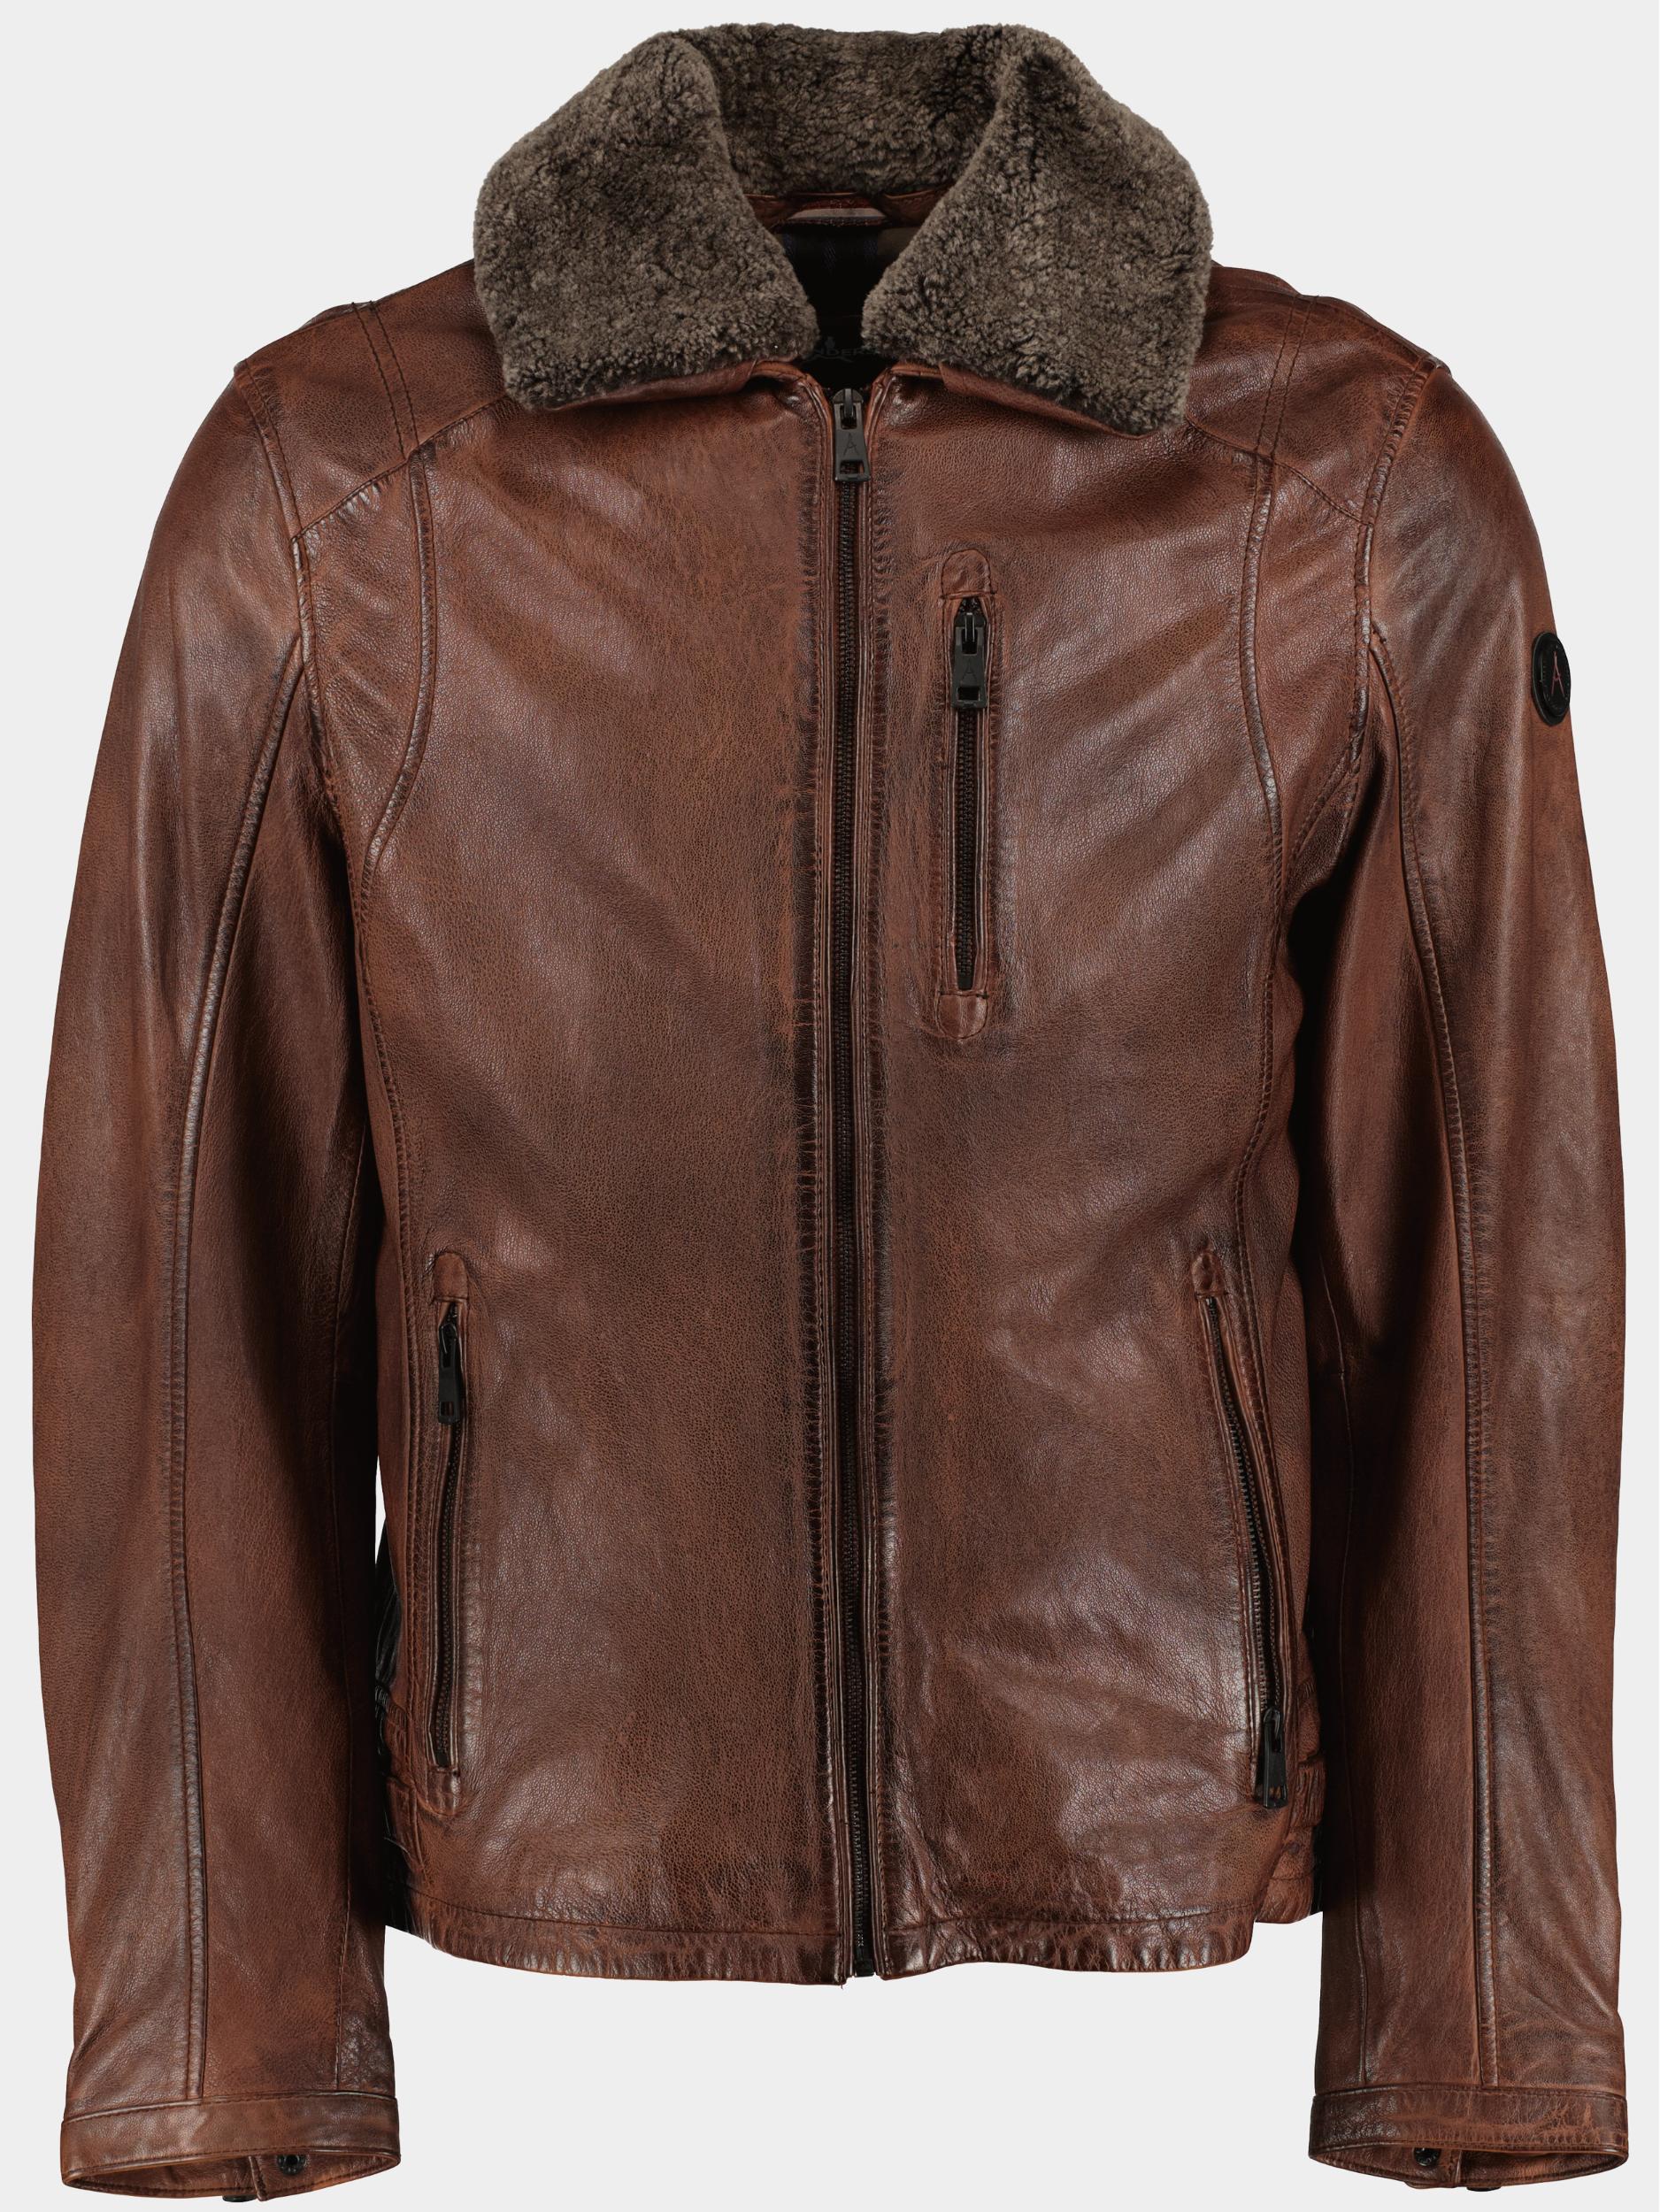 Afbeelding van DNR Lederen jack kleur toevoegen leather jacket 52196.3/460